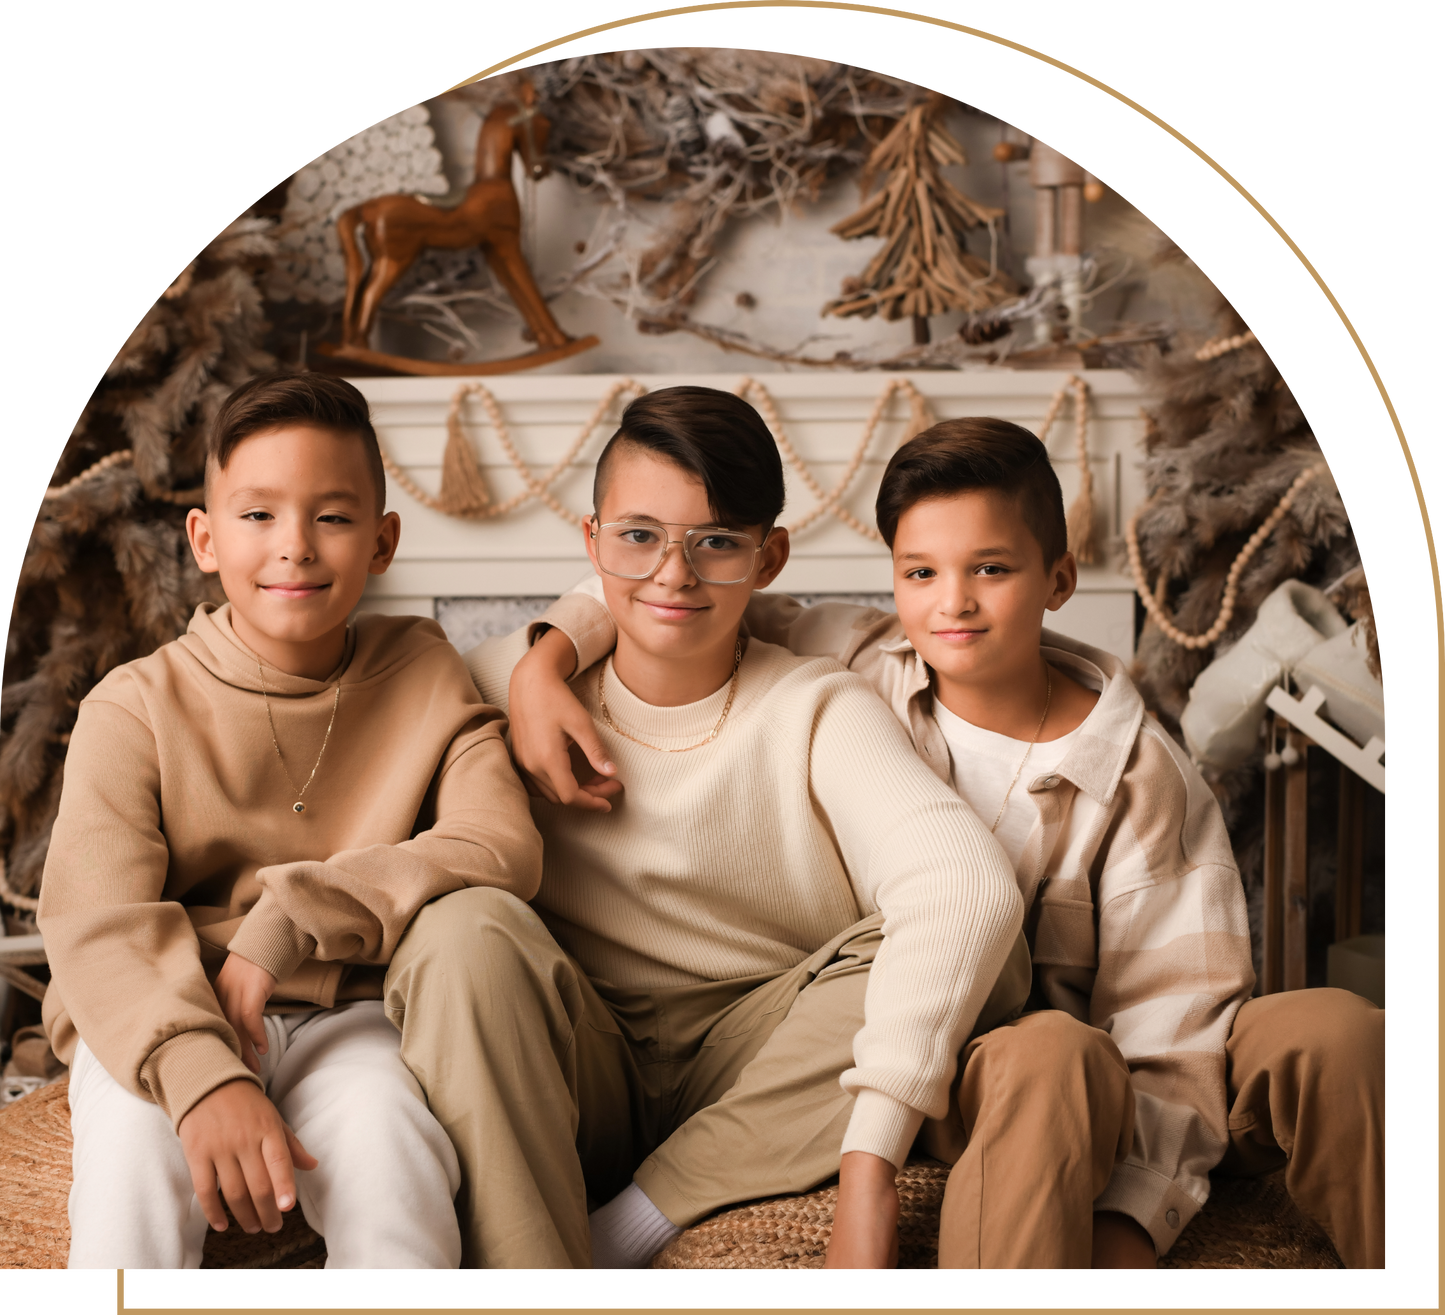 les 3 enfants de Kevins Kyle, coiffeur de renom, photographiés  pour le temps des fêtes